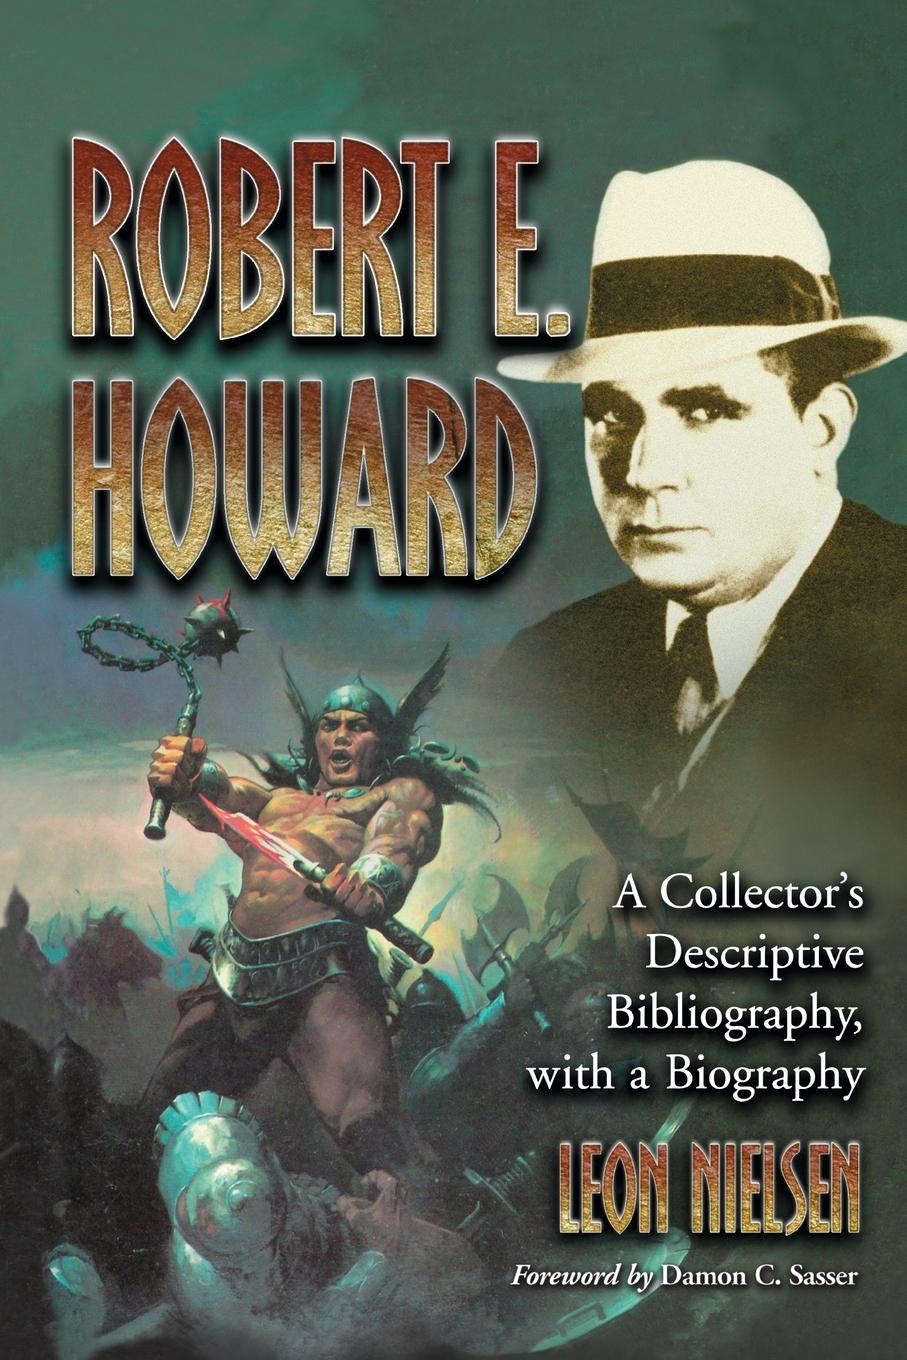 Robert E. Howard - Nielsen, Leon